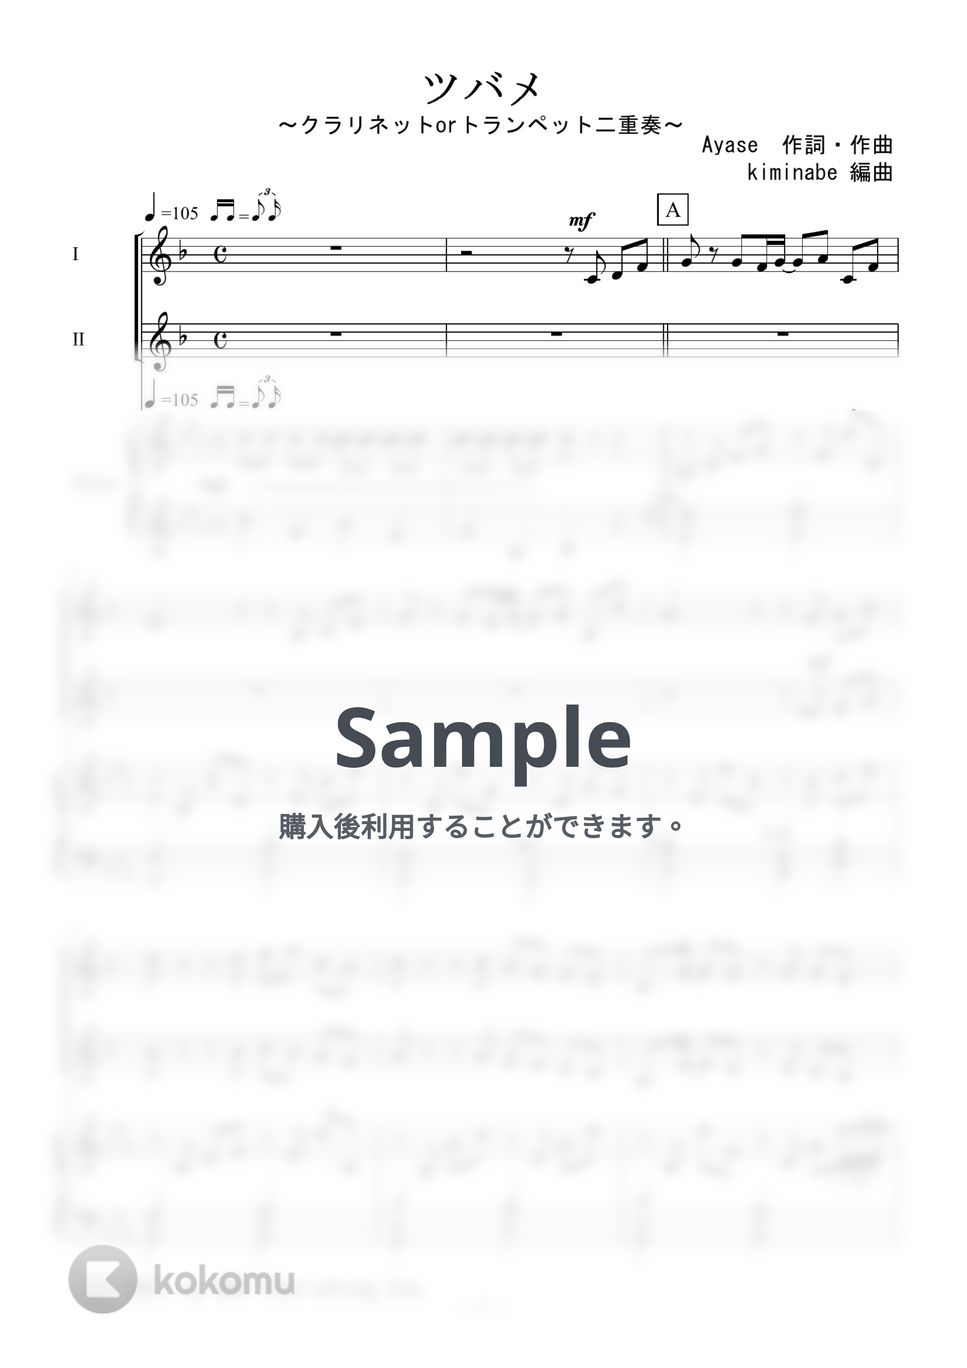 YOASOBI - ツバメ (クラリネットorトランペット二重奏) by kiminabe